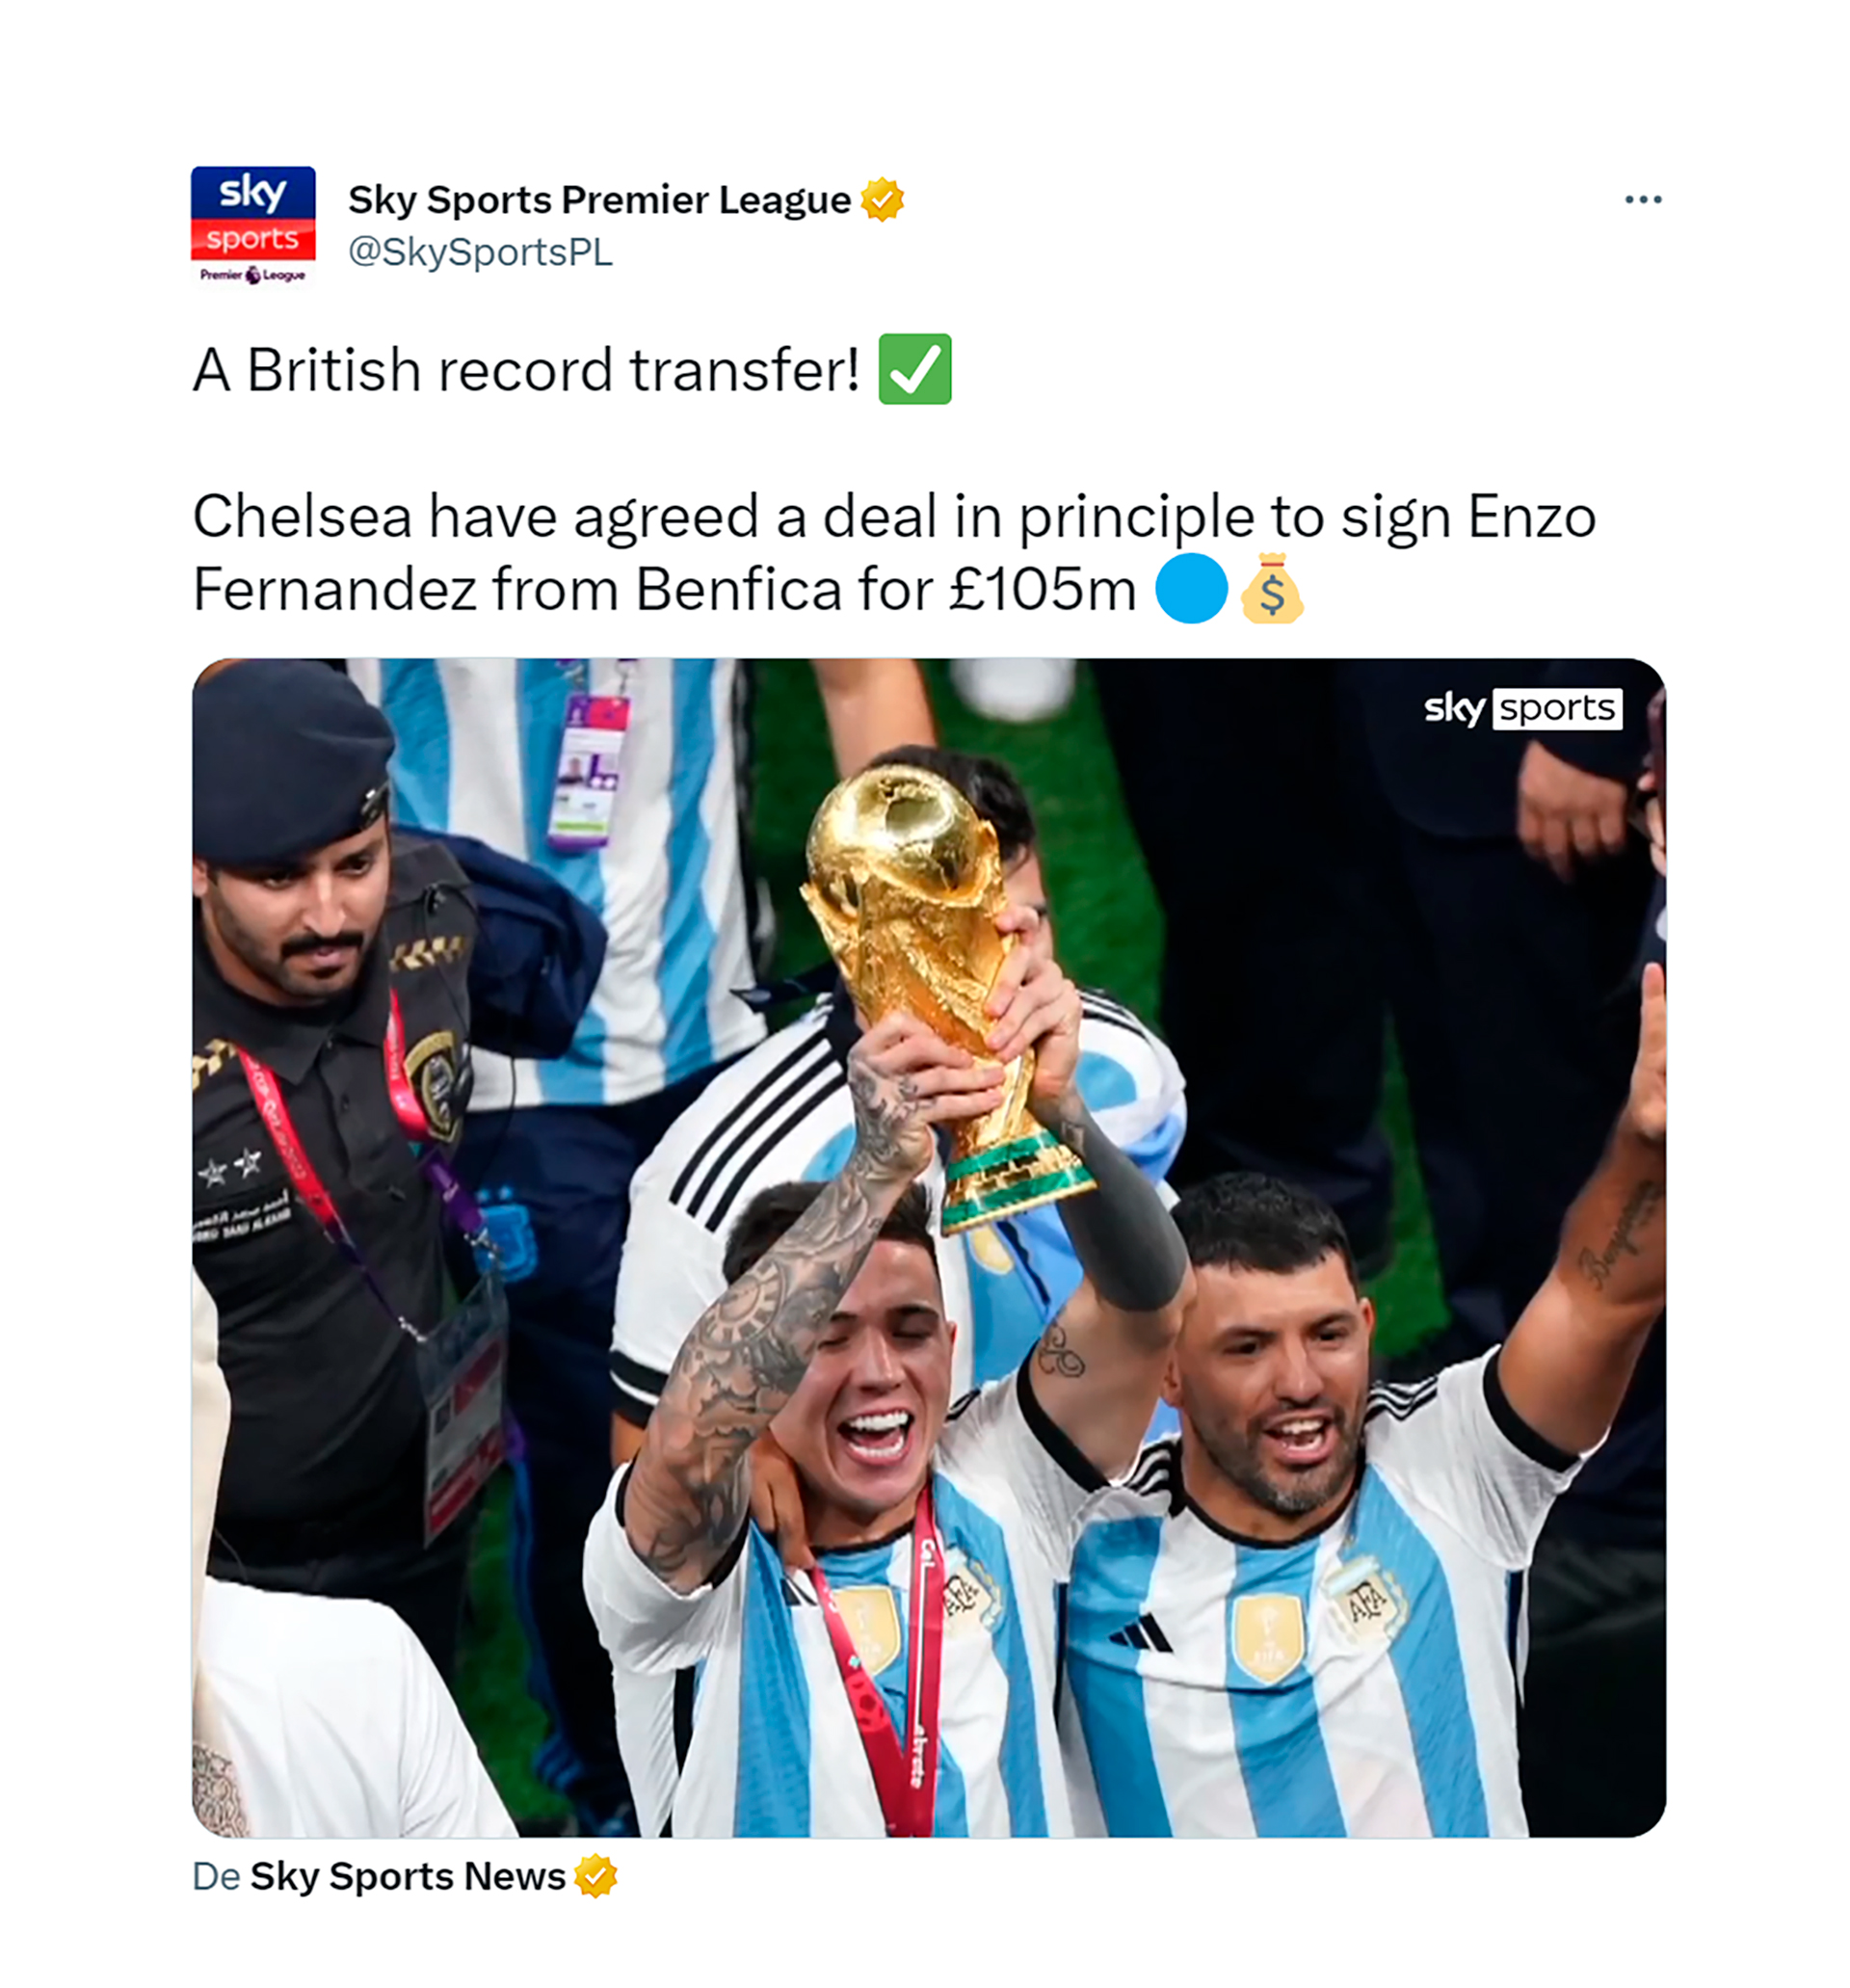 Sky Sports destaca que también se trata de una transferencia récord para el fútbol británico